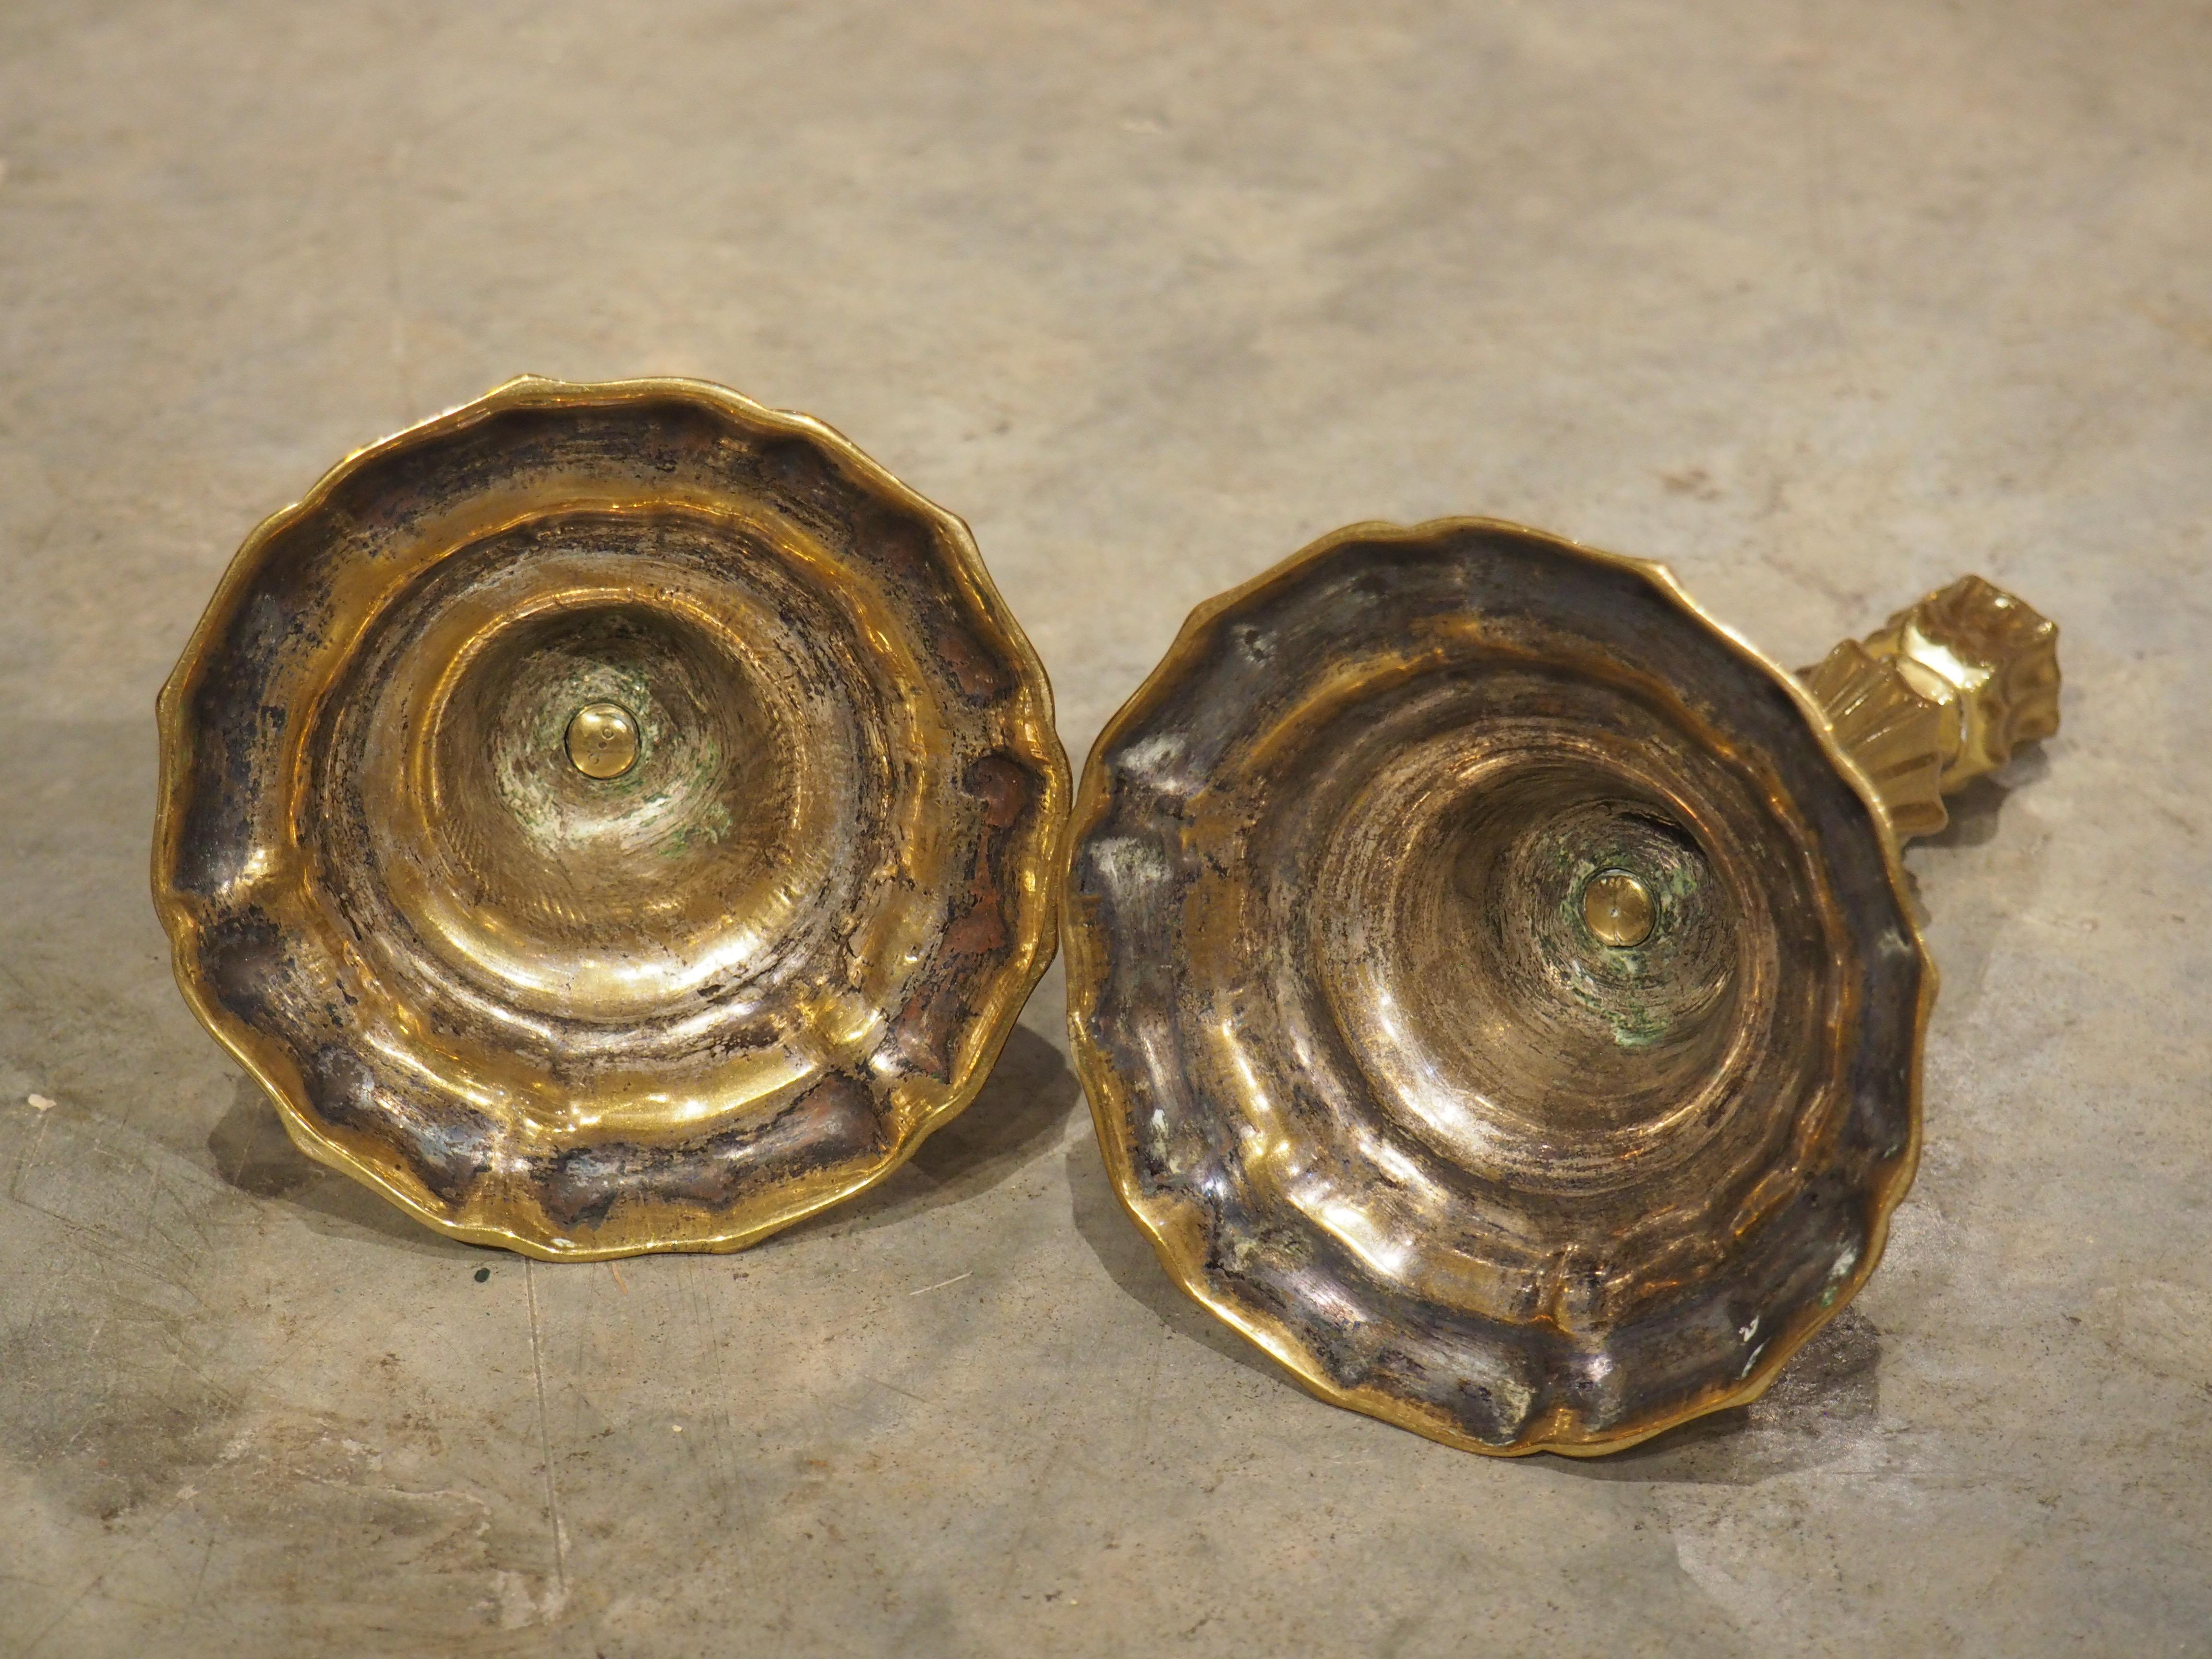 Dieses Paar vergoldeter Bronzeleuchter wurde um 1700 in Frankreich gegossen. Die stark konturierten und geschwungenen Sockel spiegeln sich in den vertieften Lappen wider, die die Schäfte und Kapitelle schmücken und an geschlossene Blütenknospen